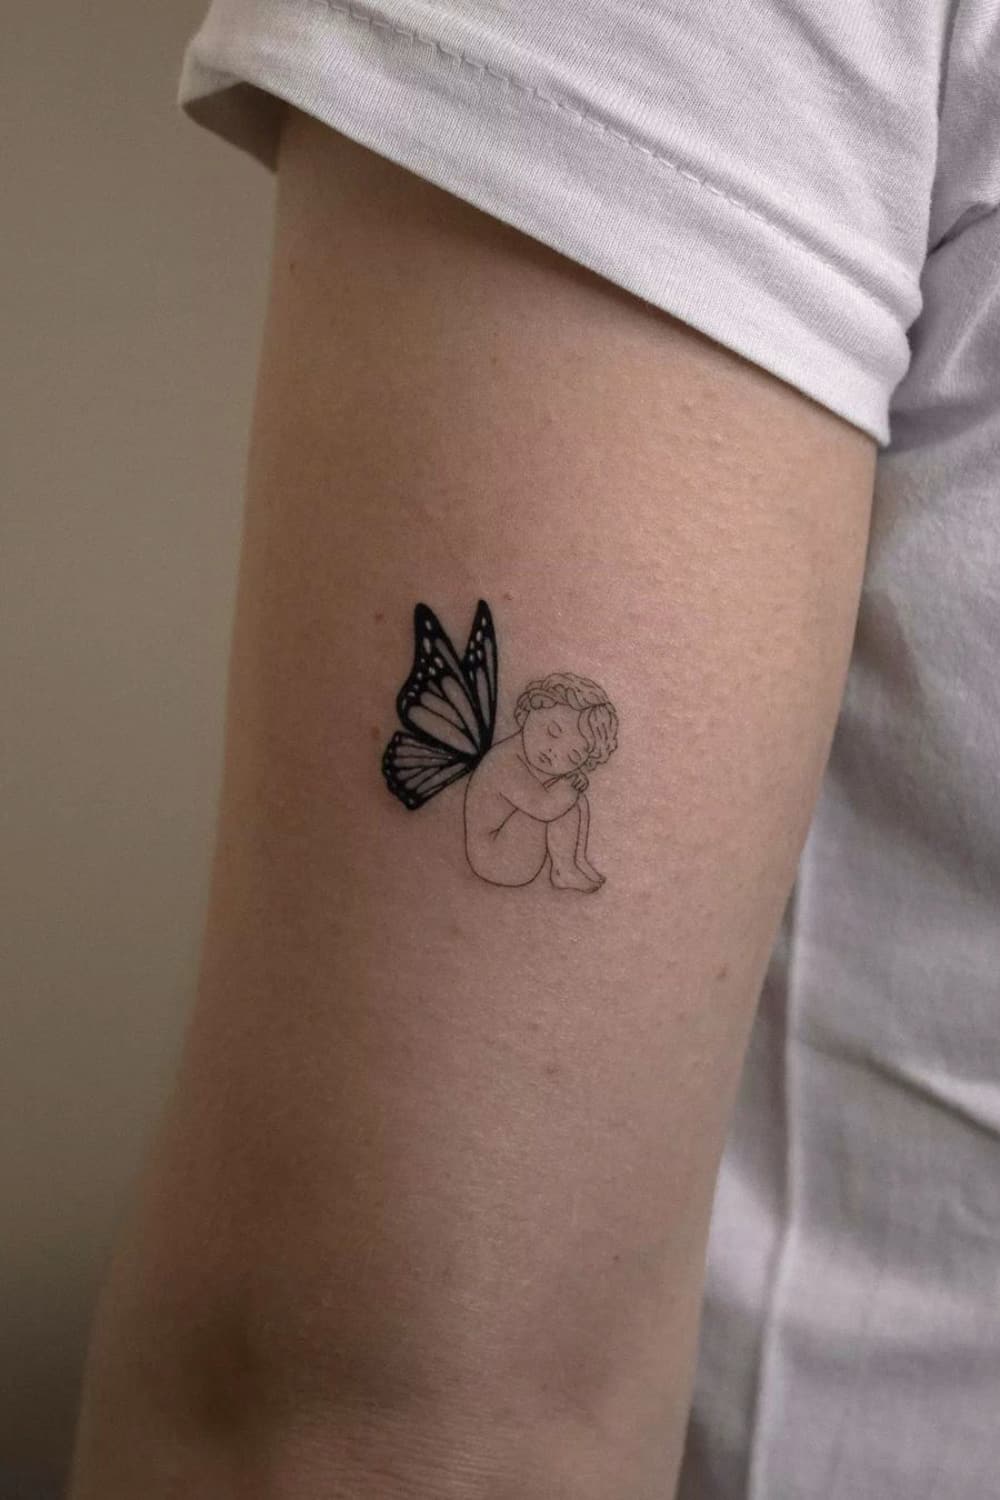 Butterfly Angel Tattoo